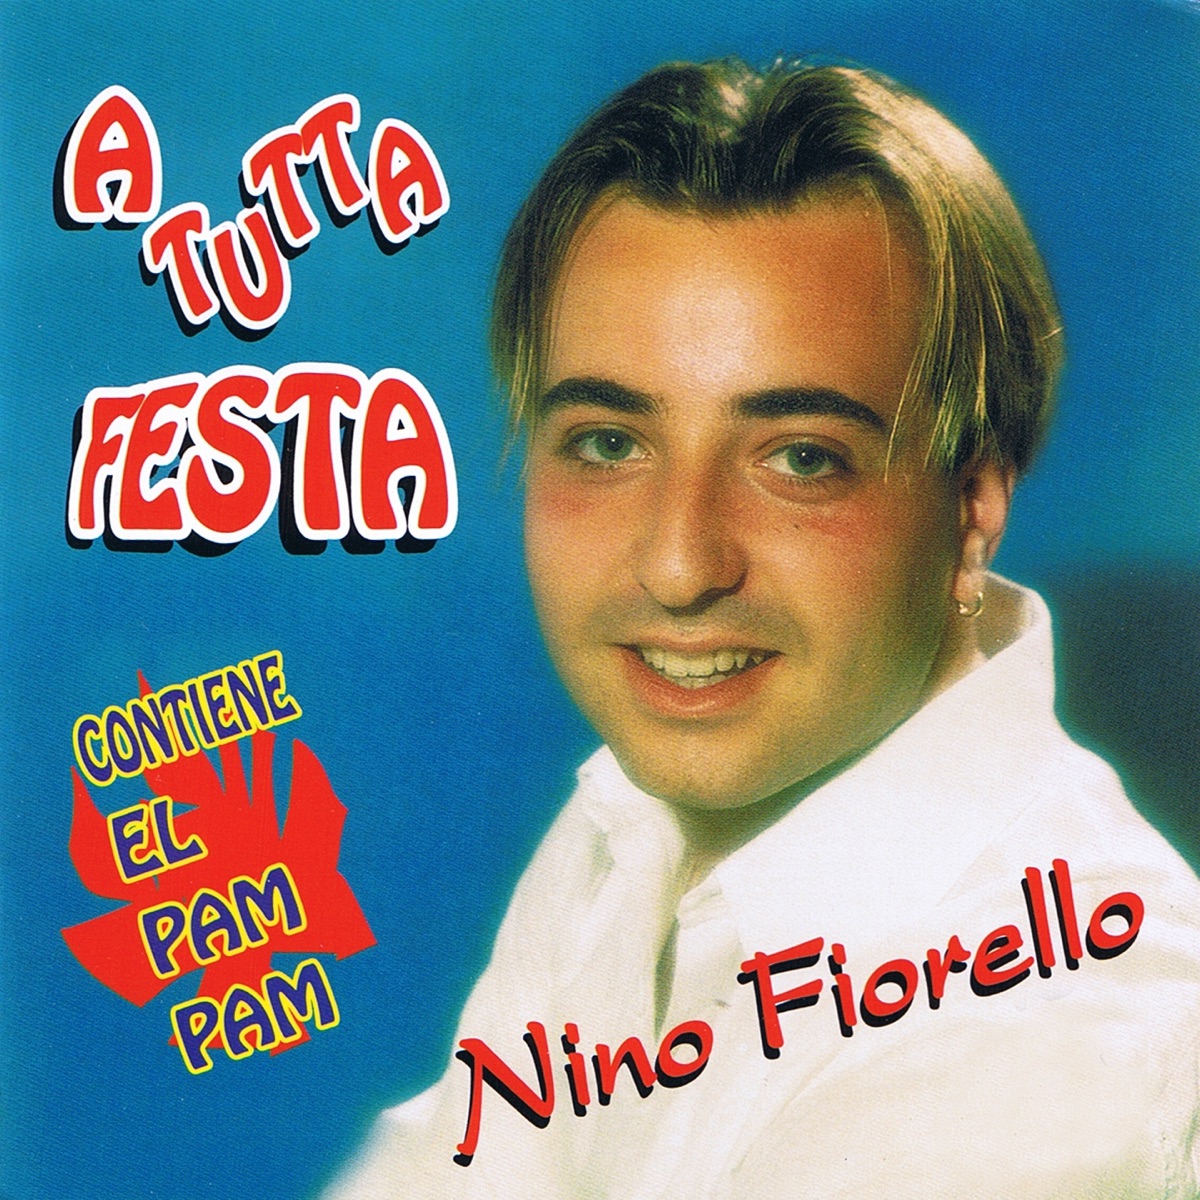 A tutta festa - Album by Nino Fiorello - Apple Music